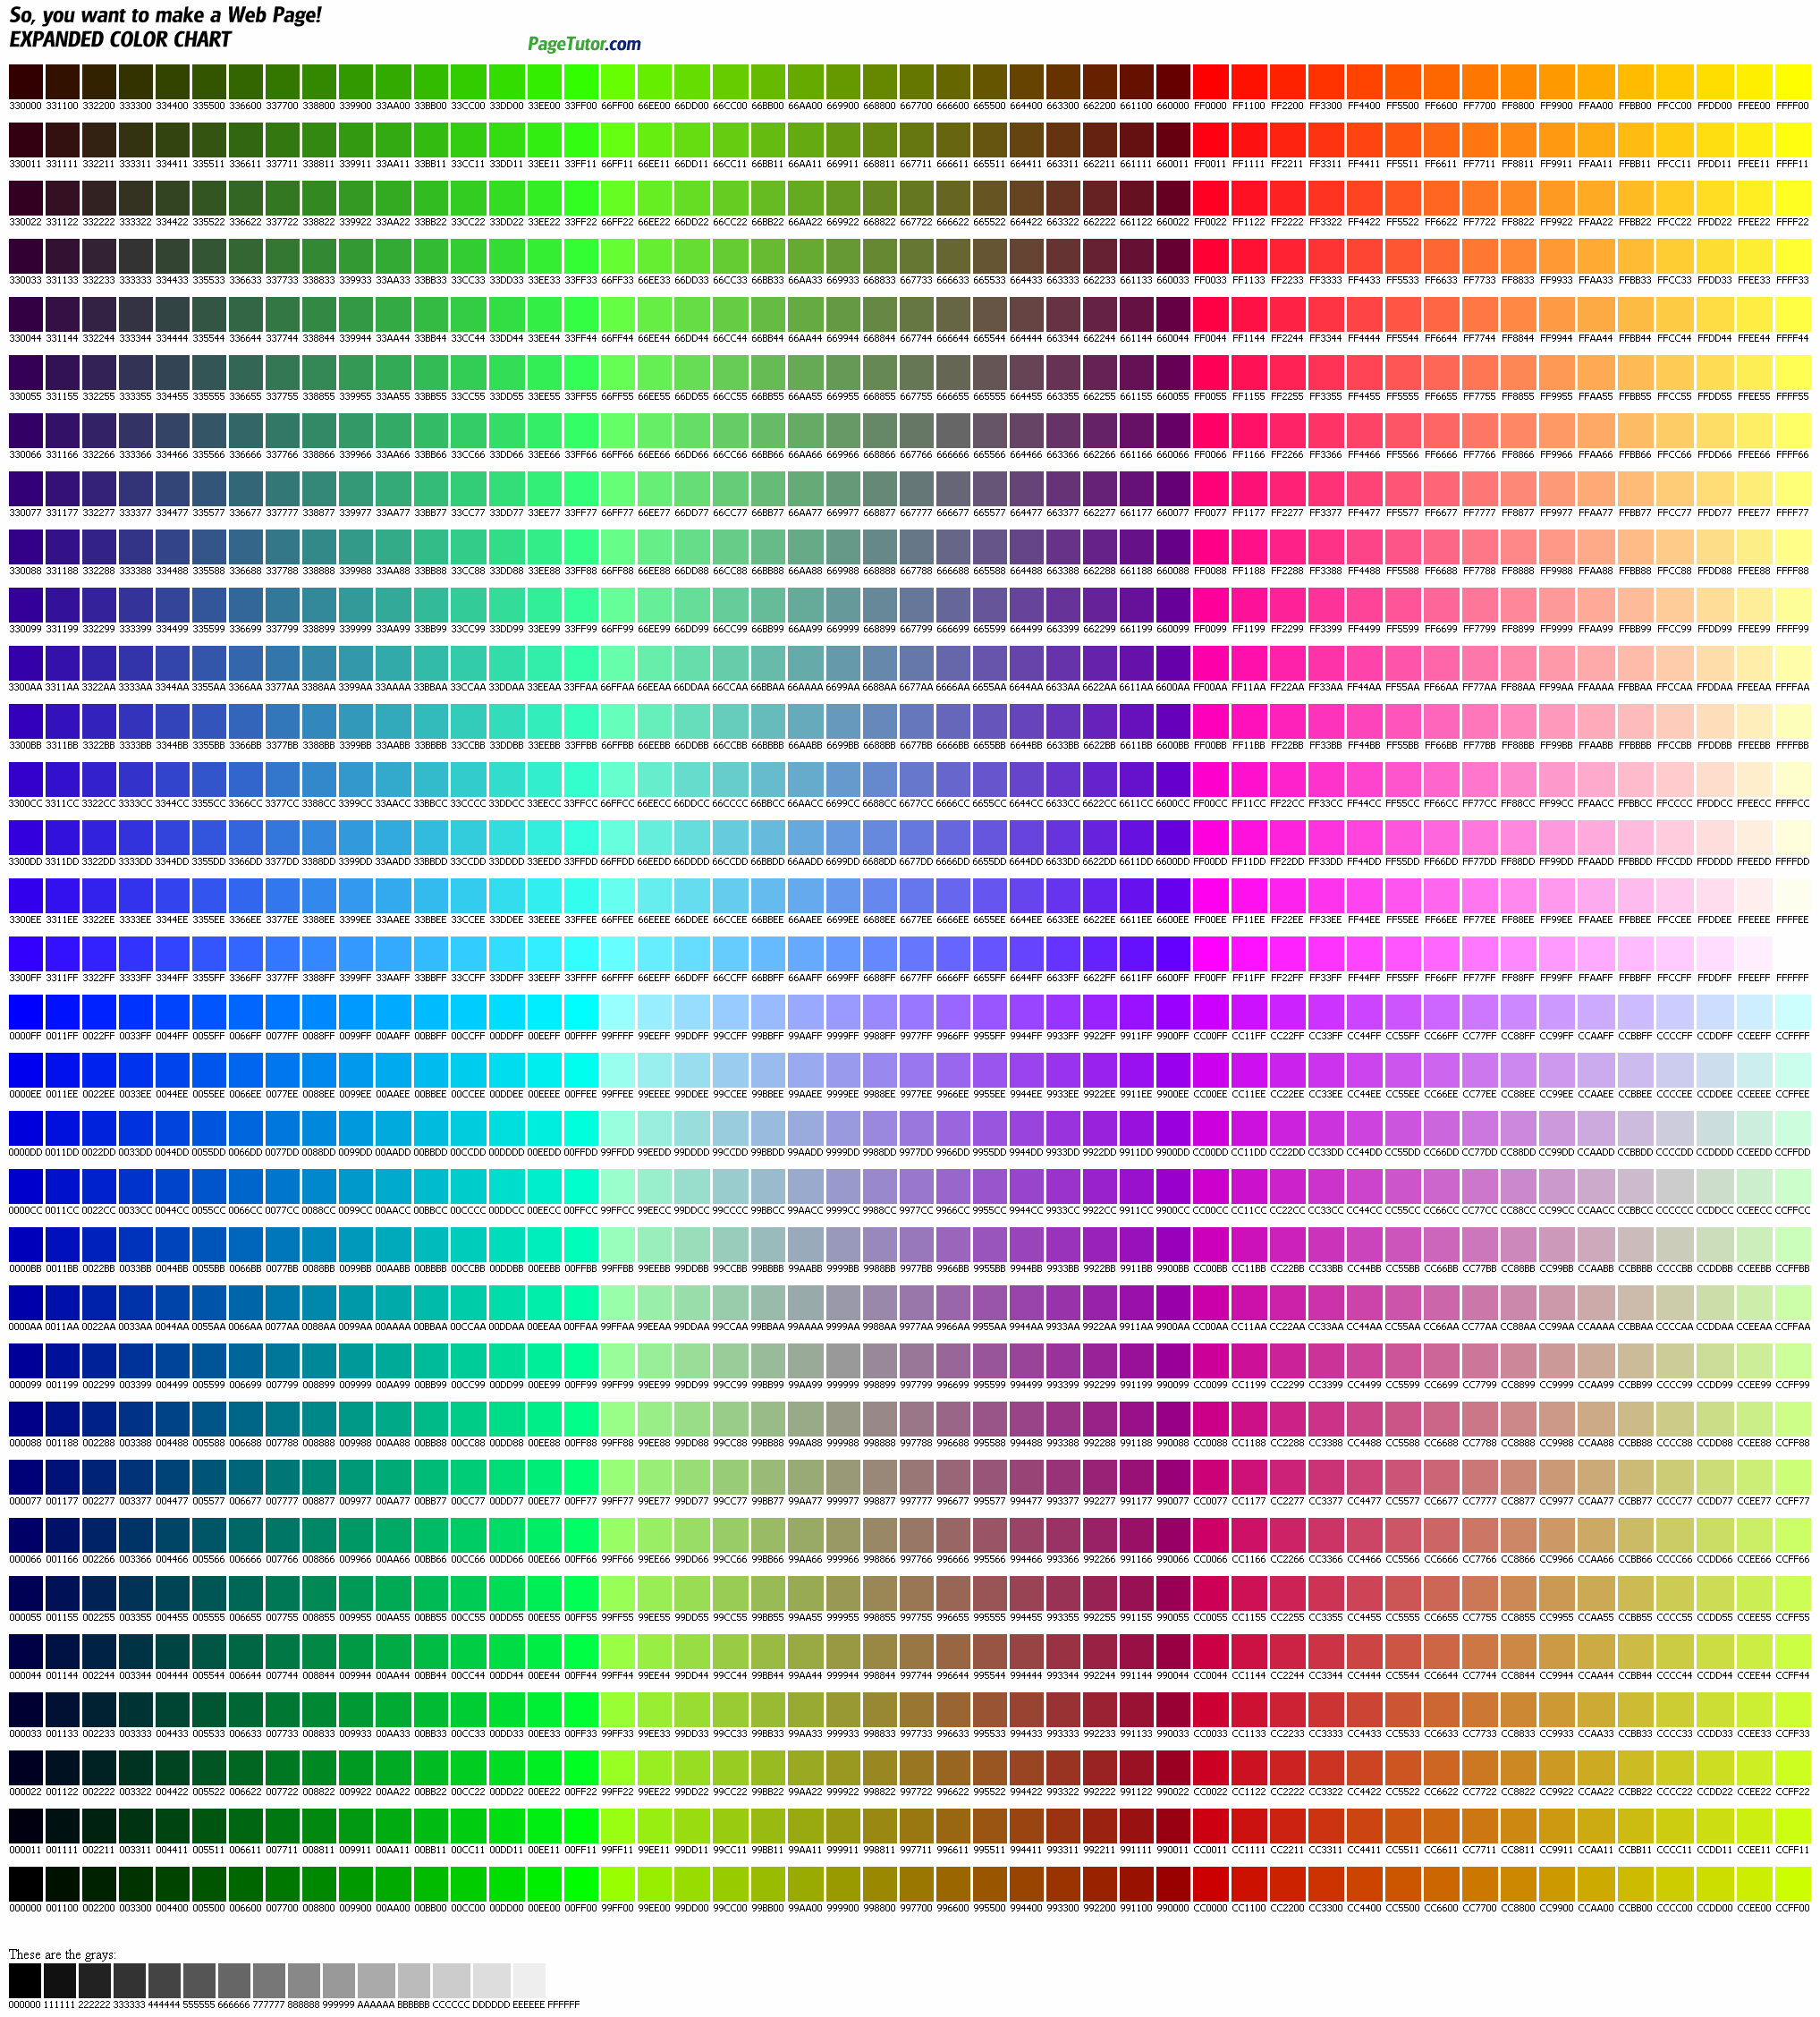 web renk kodları - html renk kodları.png